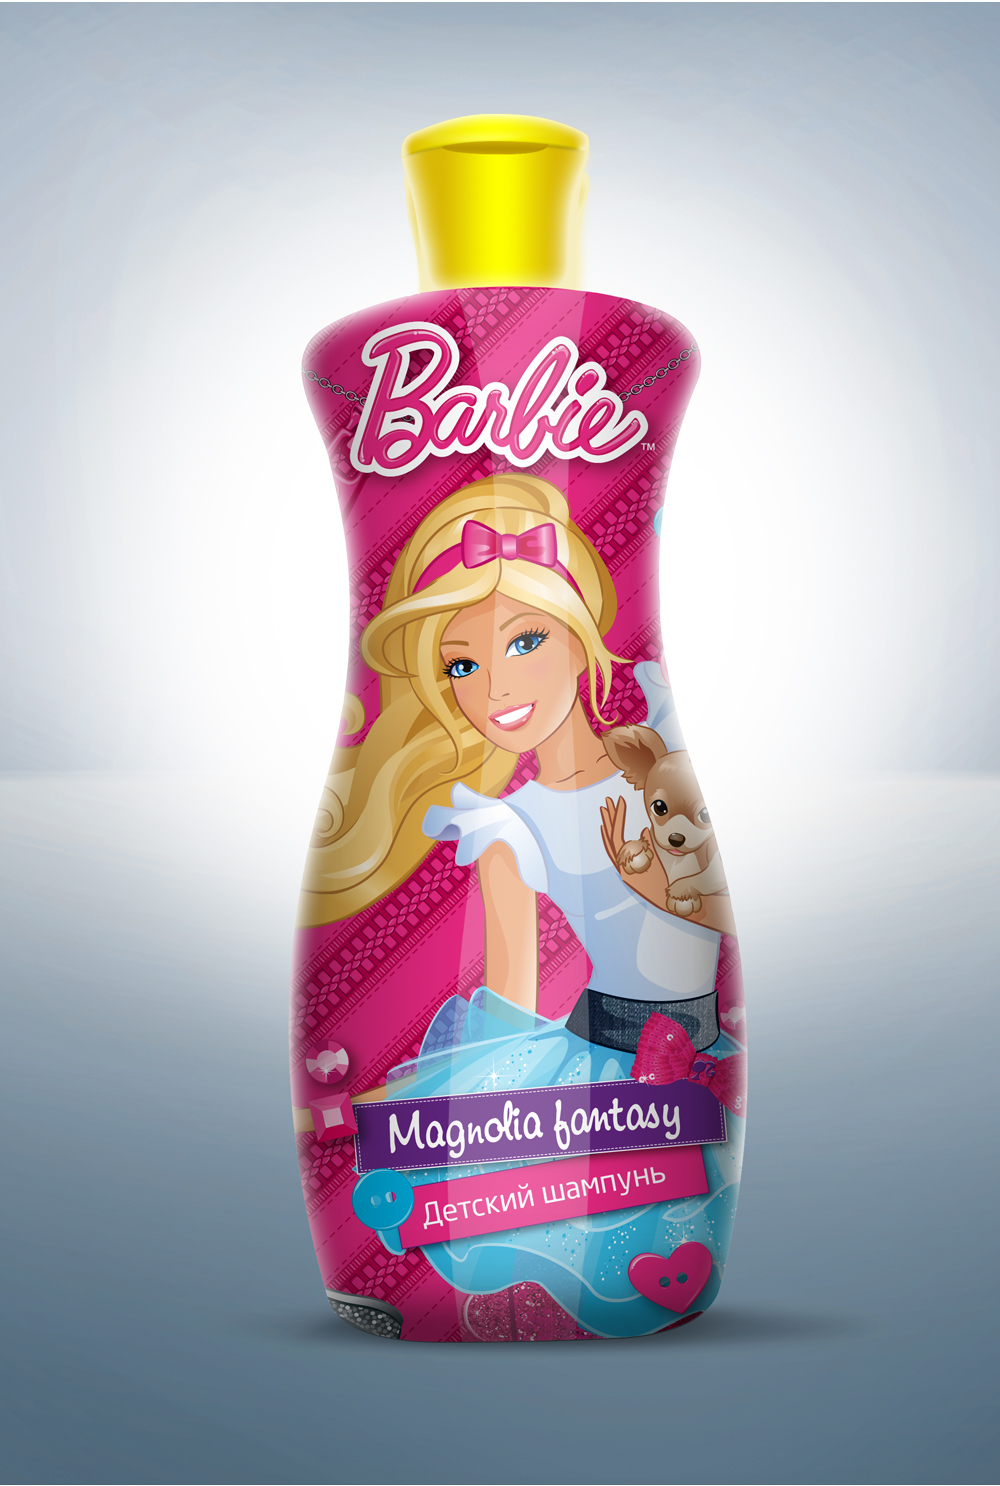 Barbie Cosmetic Package